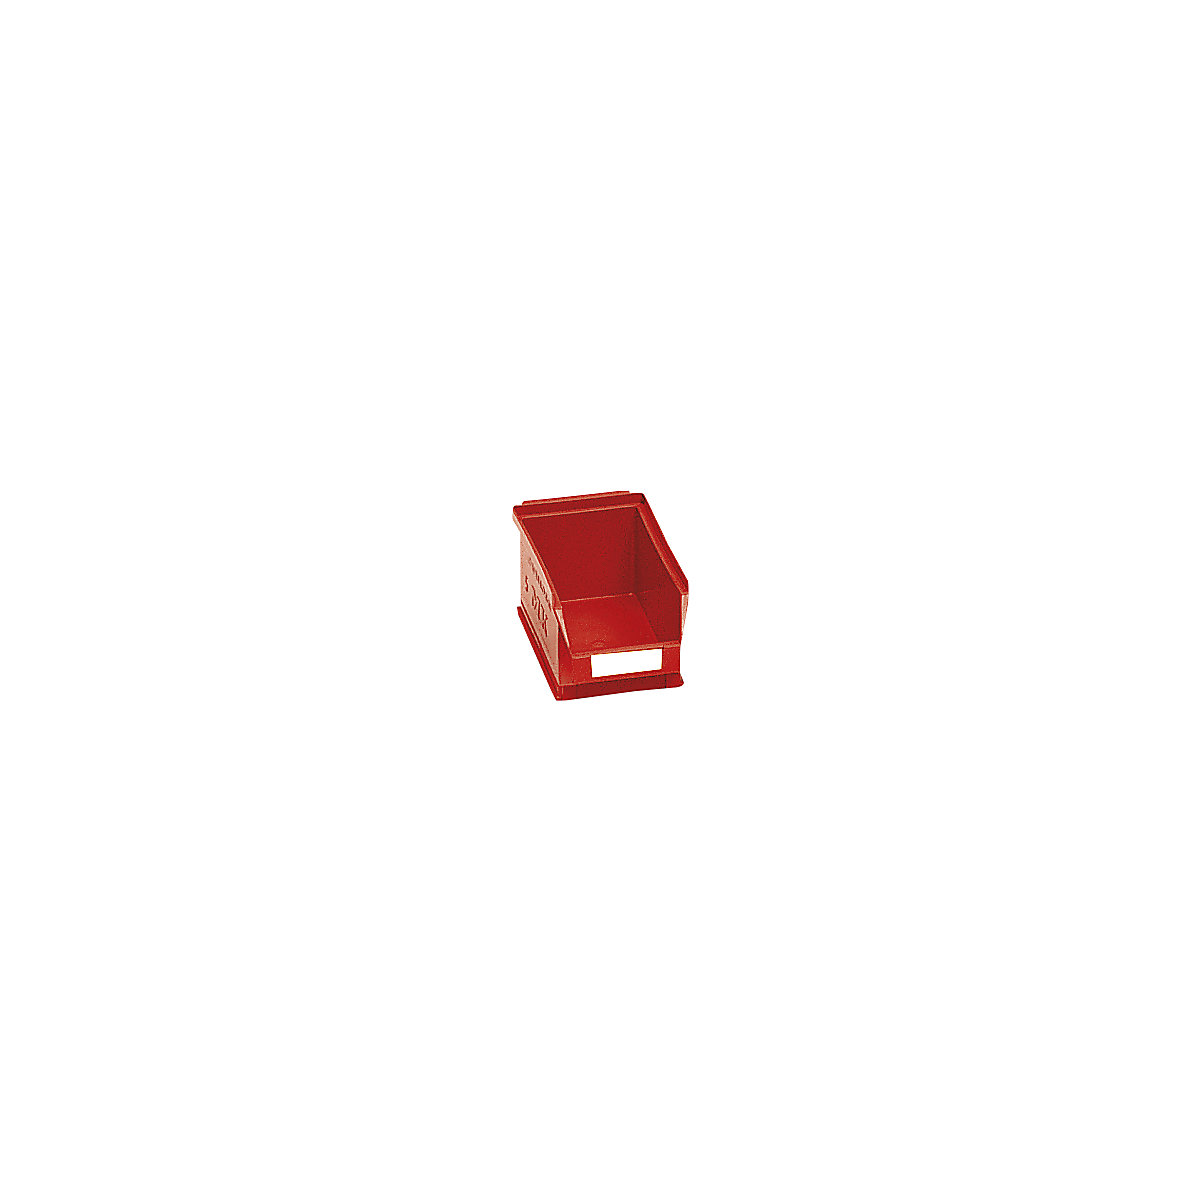 Prepravka s viditeľným obsahom z polyetylénu – mauser, d x š x v 160 x 100 x 75 mm, červená, OJ 25 ks-8